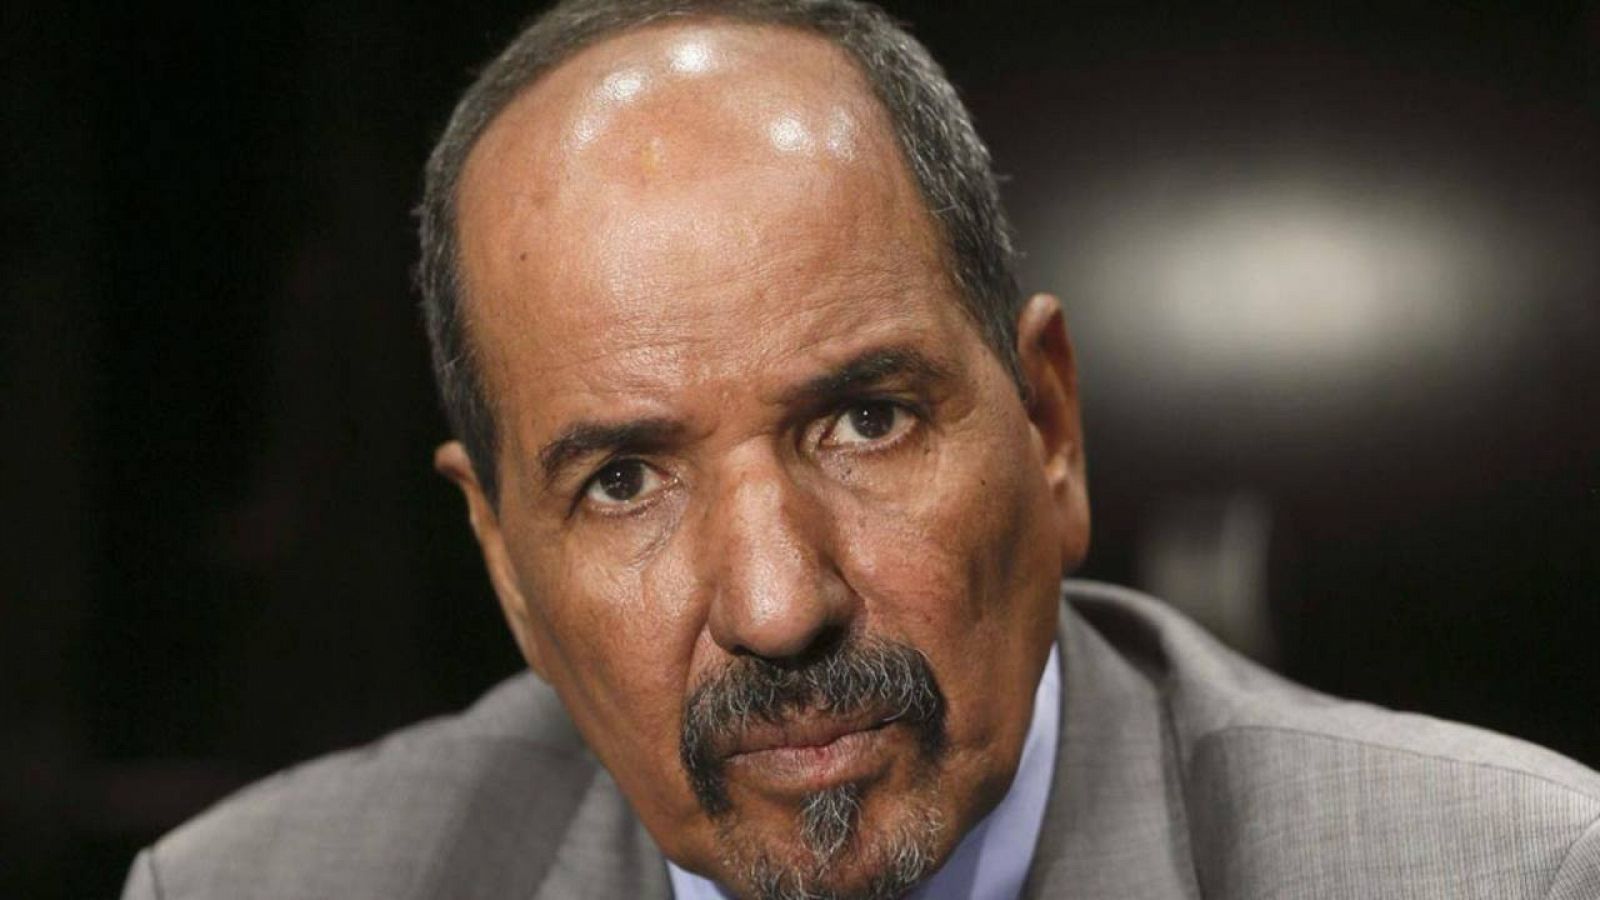 El presidente de la República Árabe Saharaui Democrática (RASD) y líder del Frente Polisario, Mohamad Abdelaziz